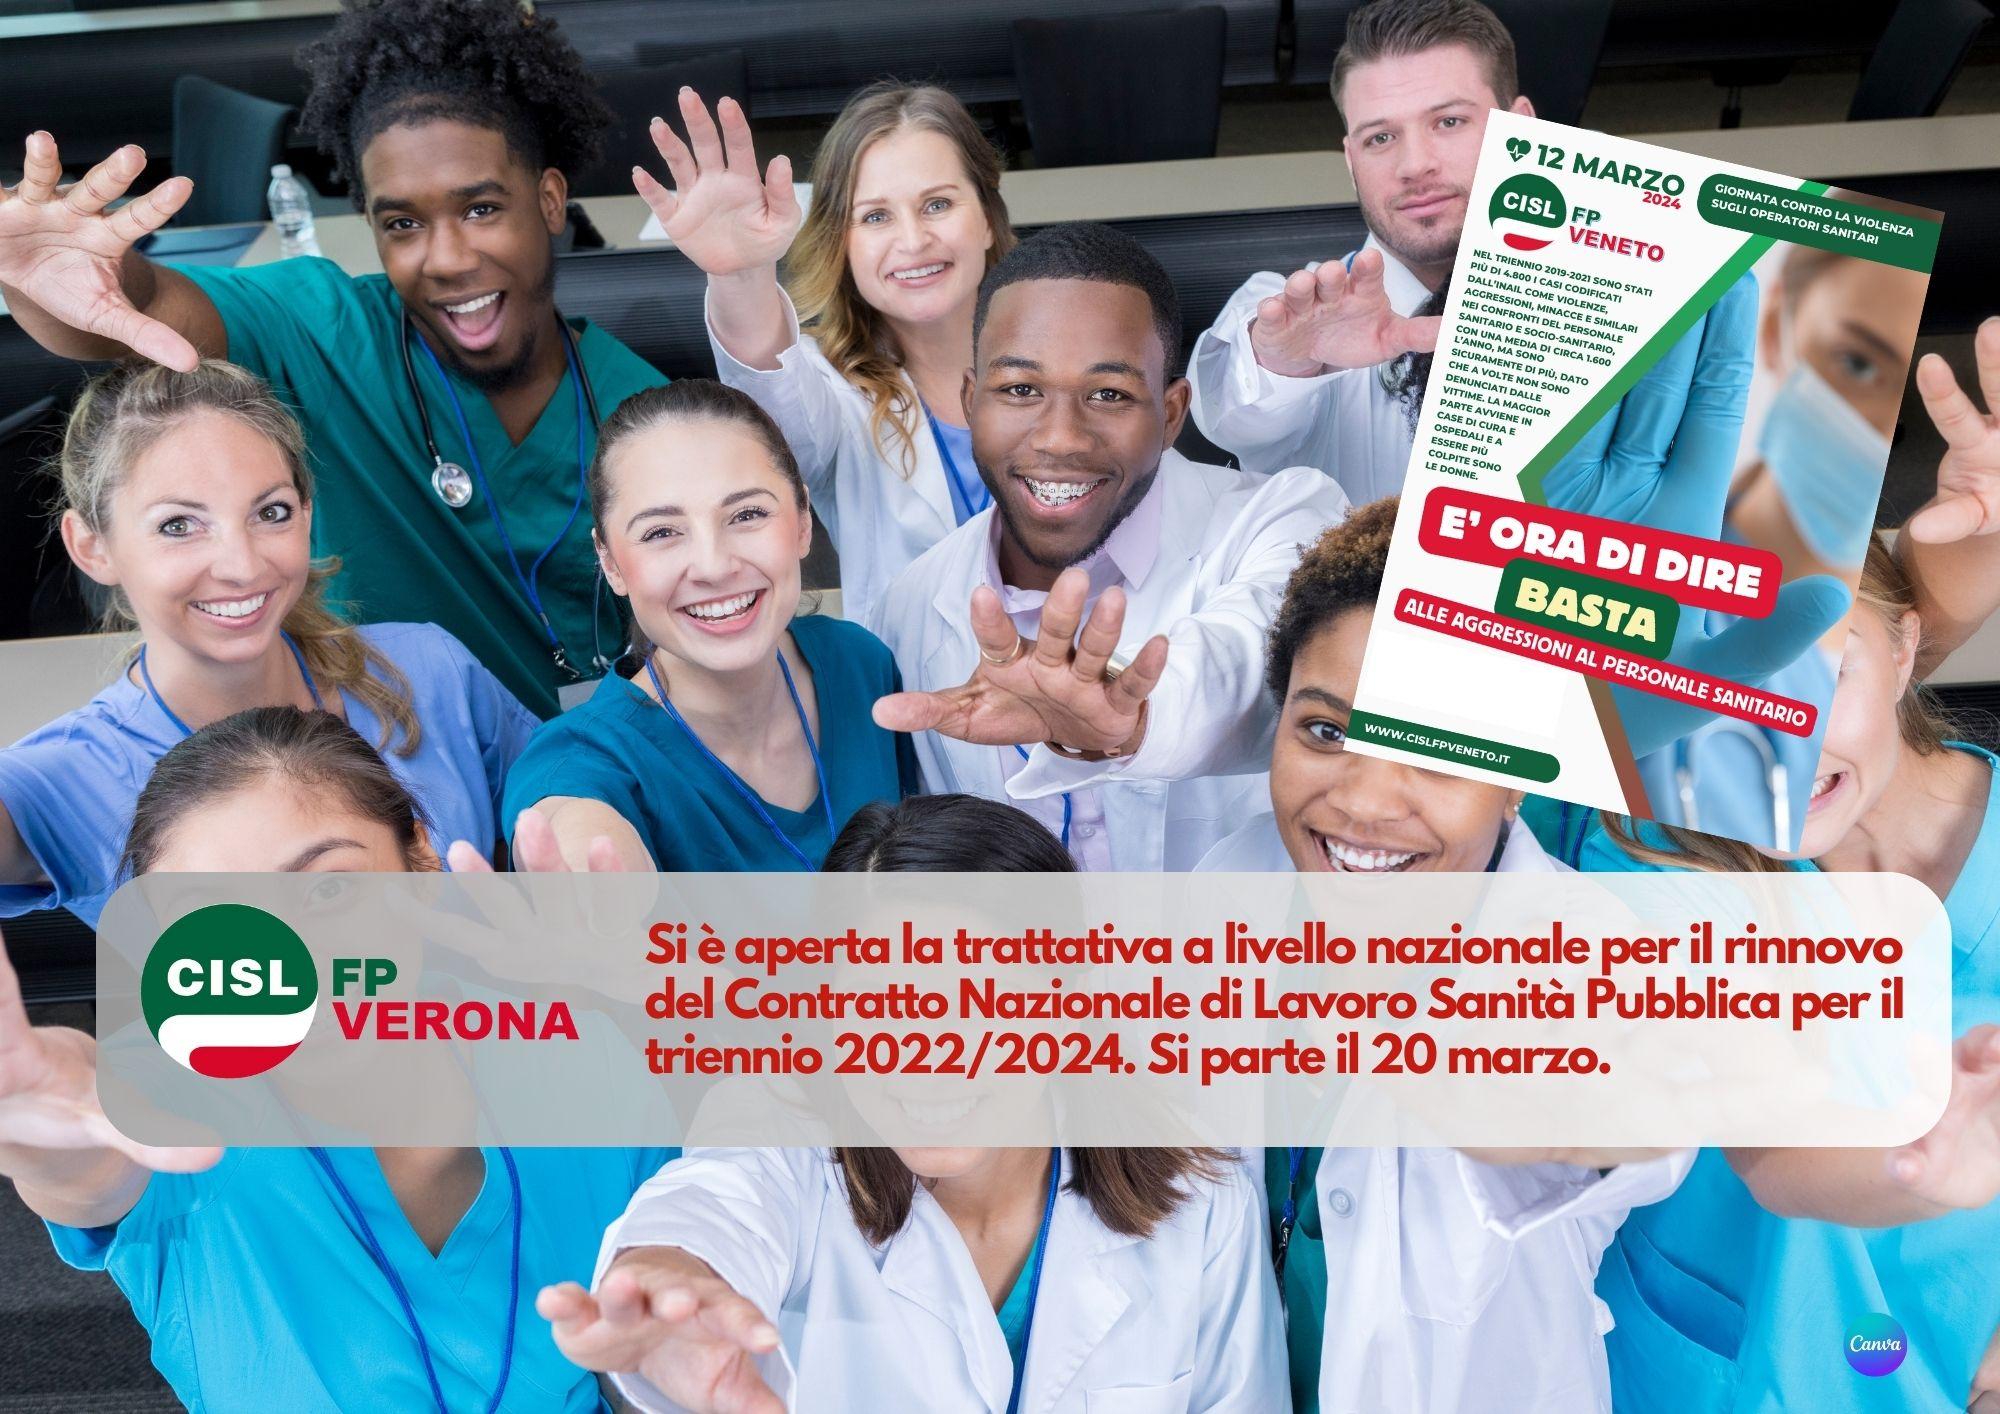 CISL FP Verona. Contratto Sanità pubblica 2022/2024. Aperta la trattativa: si parte il 20 marzo